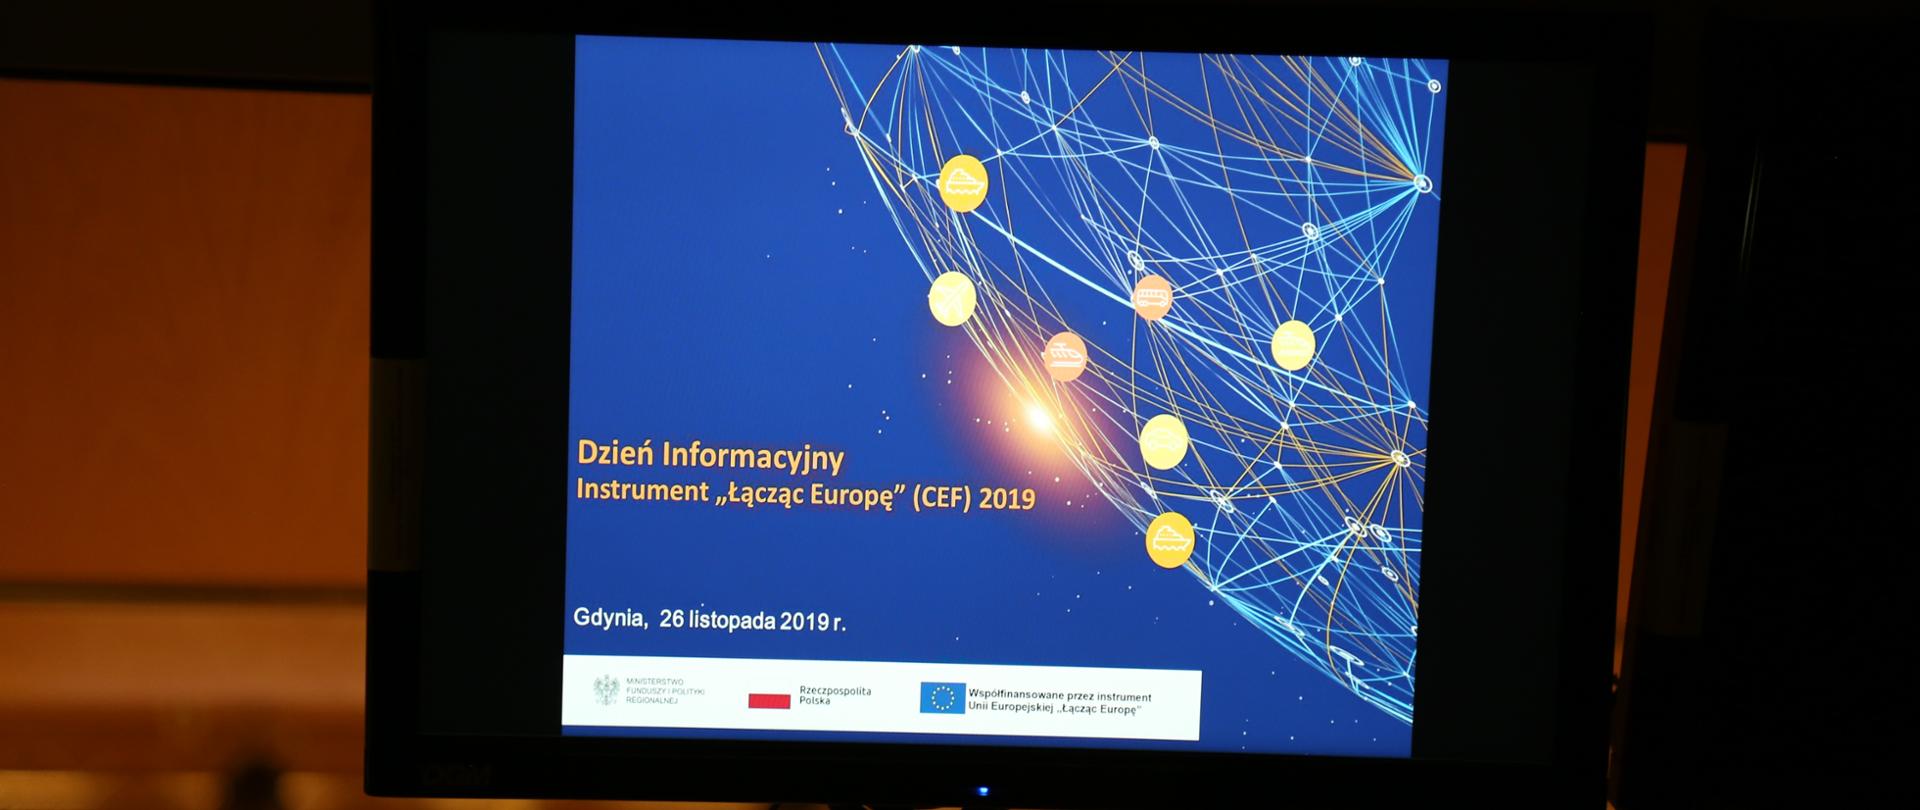 Zdjęcie. Ekran, na którym jest napis "Dzień Informacyjny Instrument "Łącząc Europę CEF, 2019, Gdynia, 26 listopada 2019 r. 